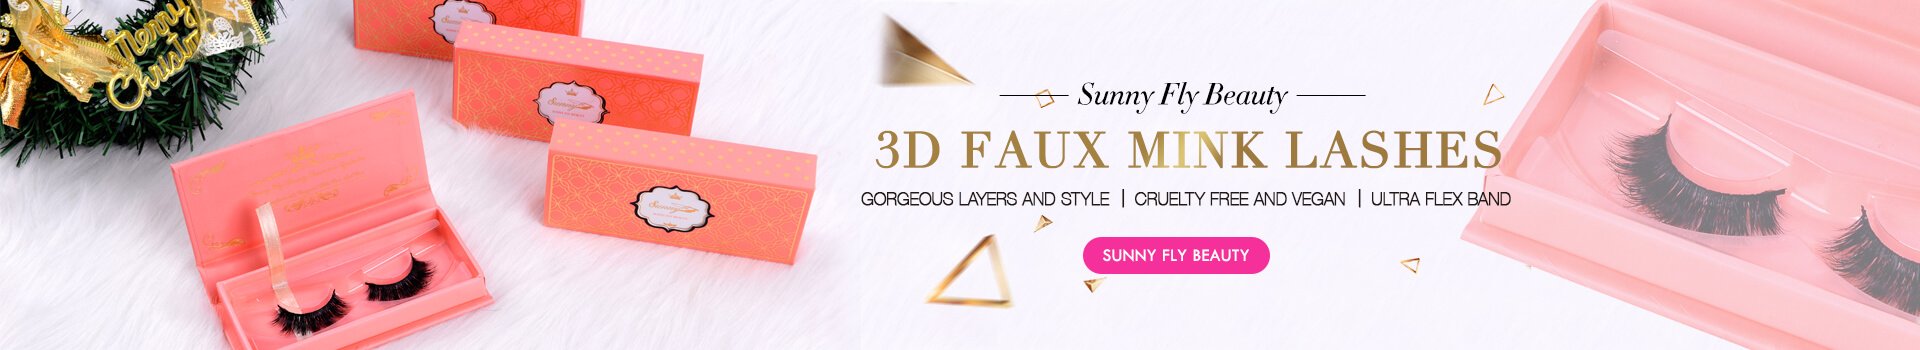 3D Faux Mink Lashes SD52